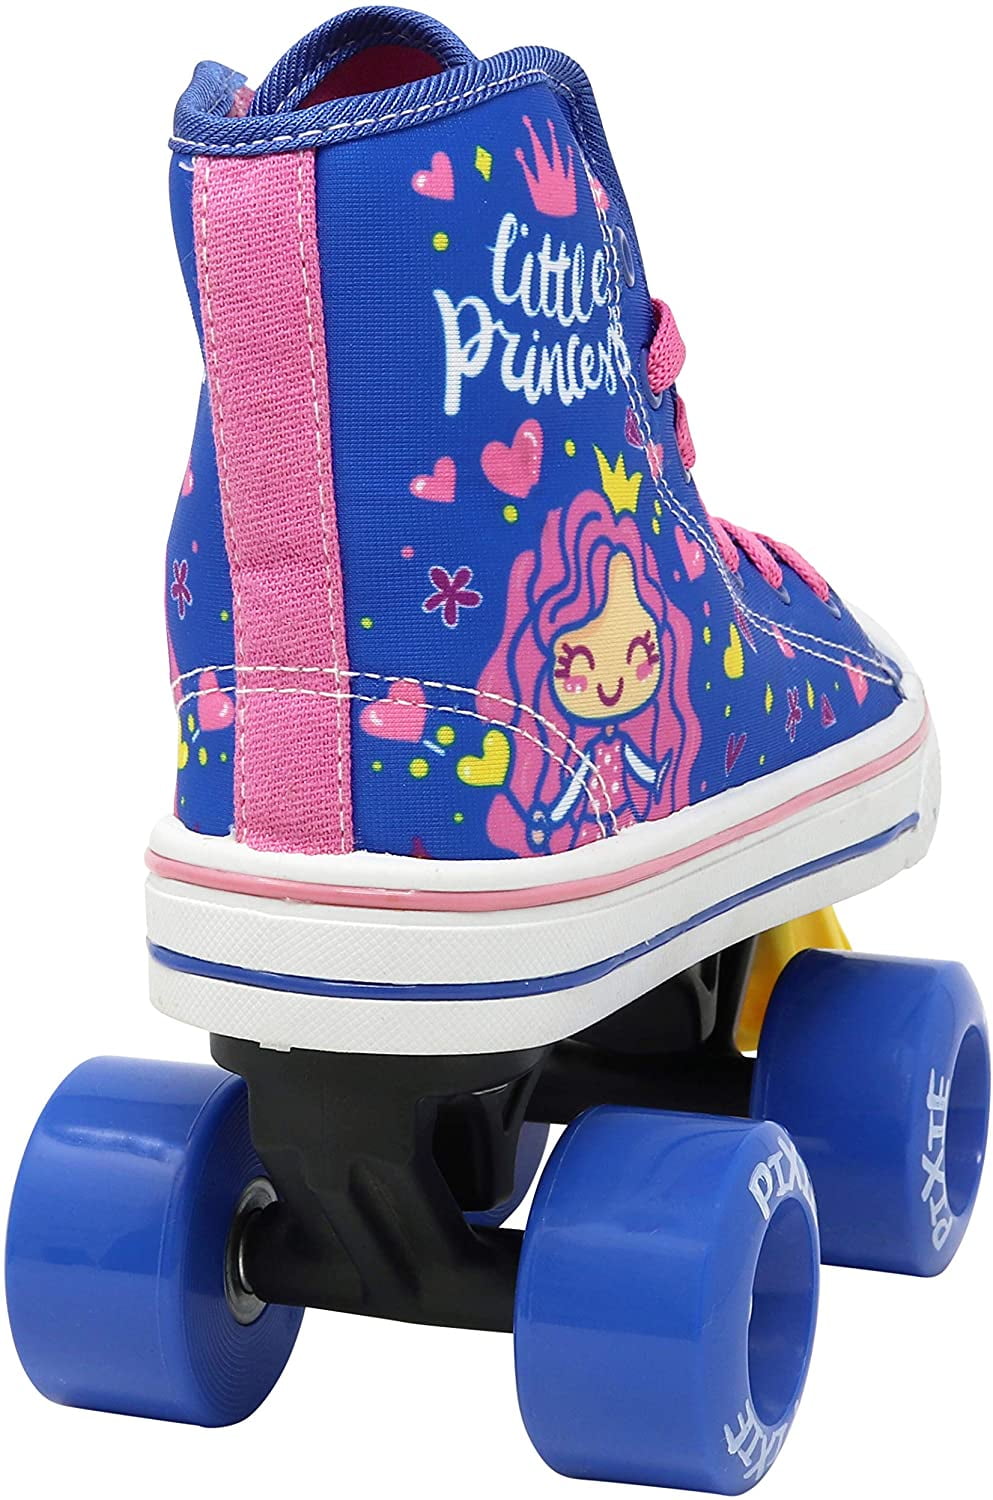 Lenexa Pixie Unicorn Kids Roller Skates Girls Quad Roller Skate Size J10 kids 